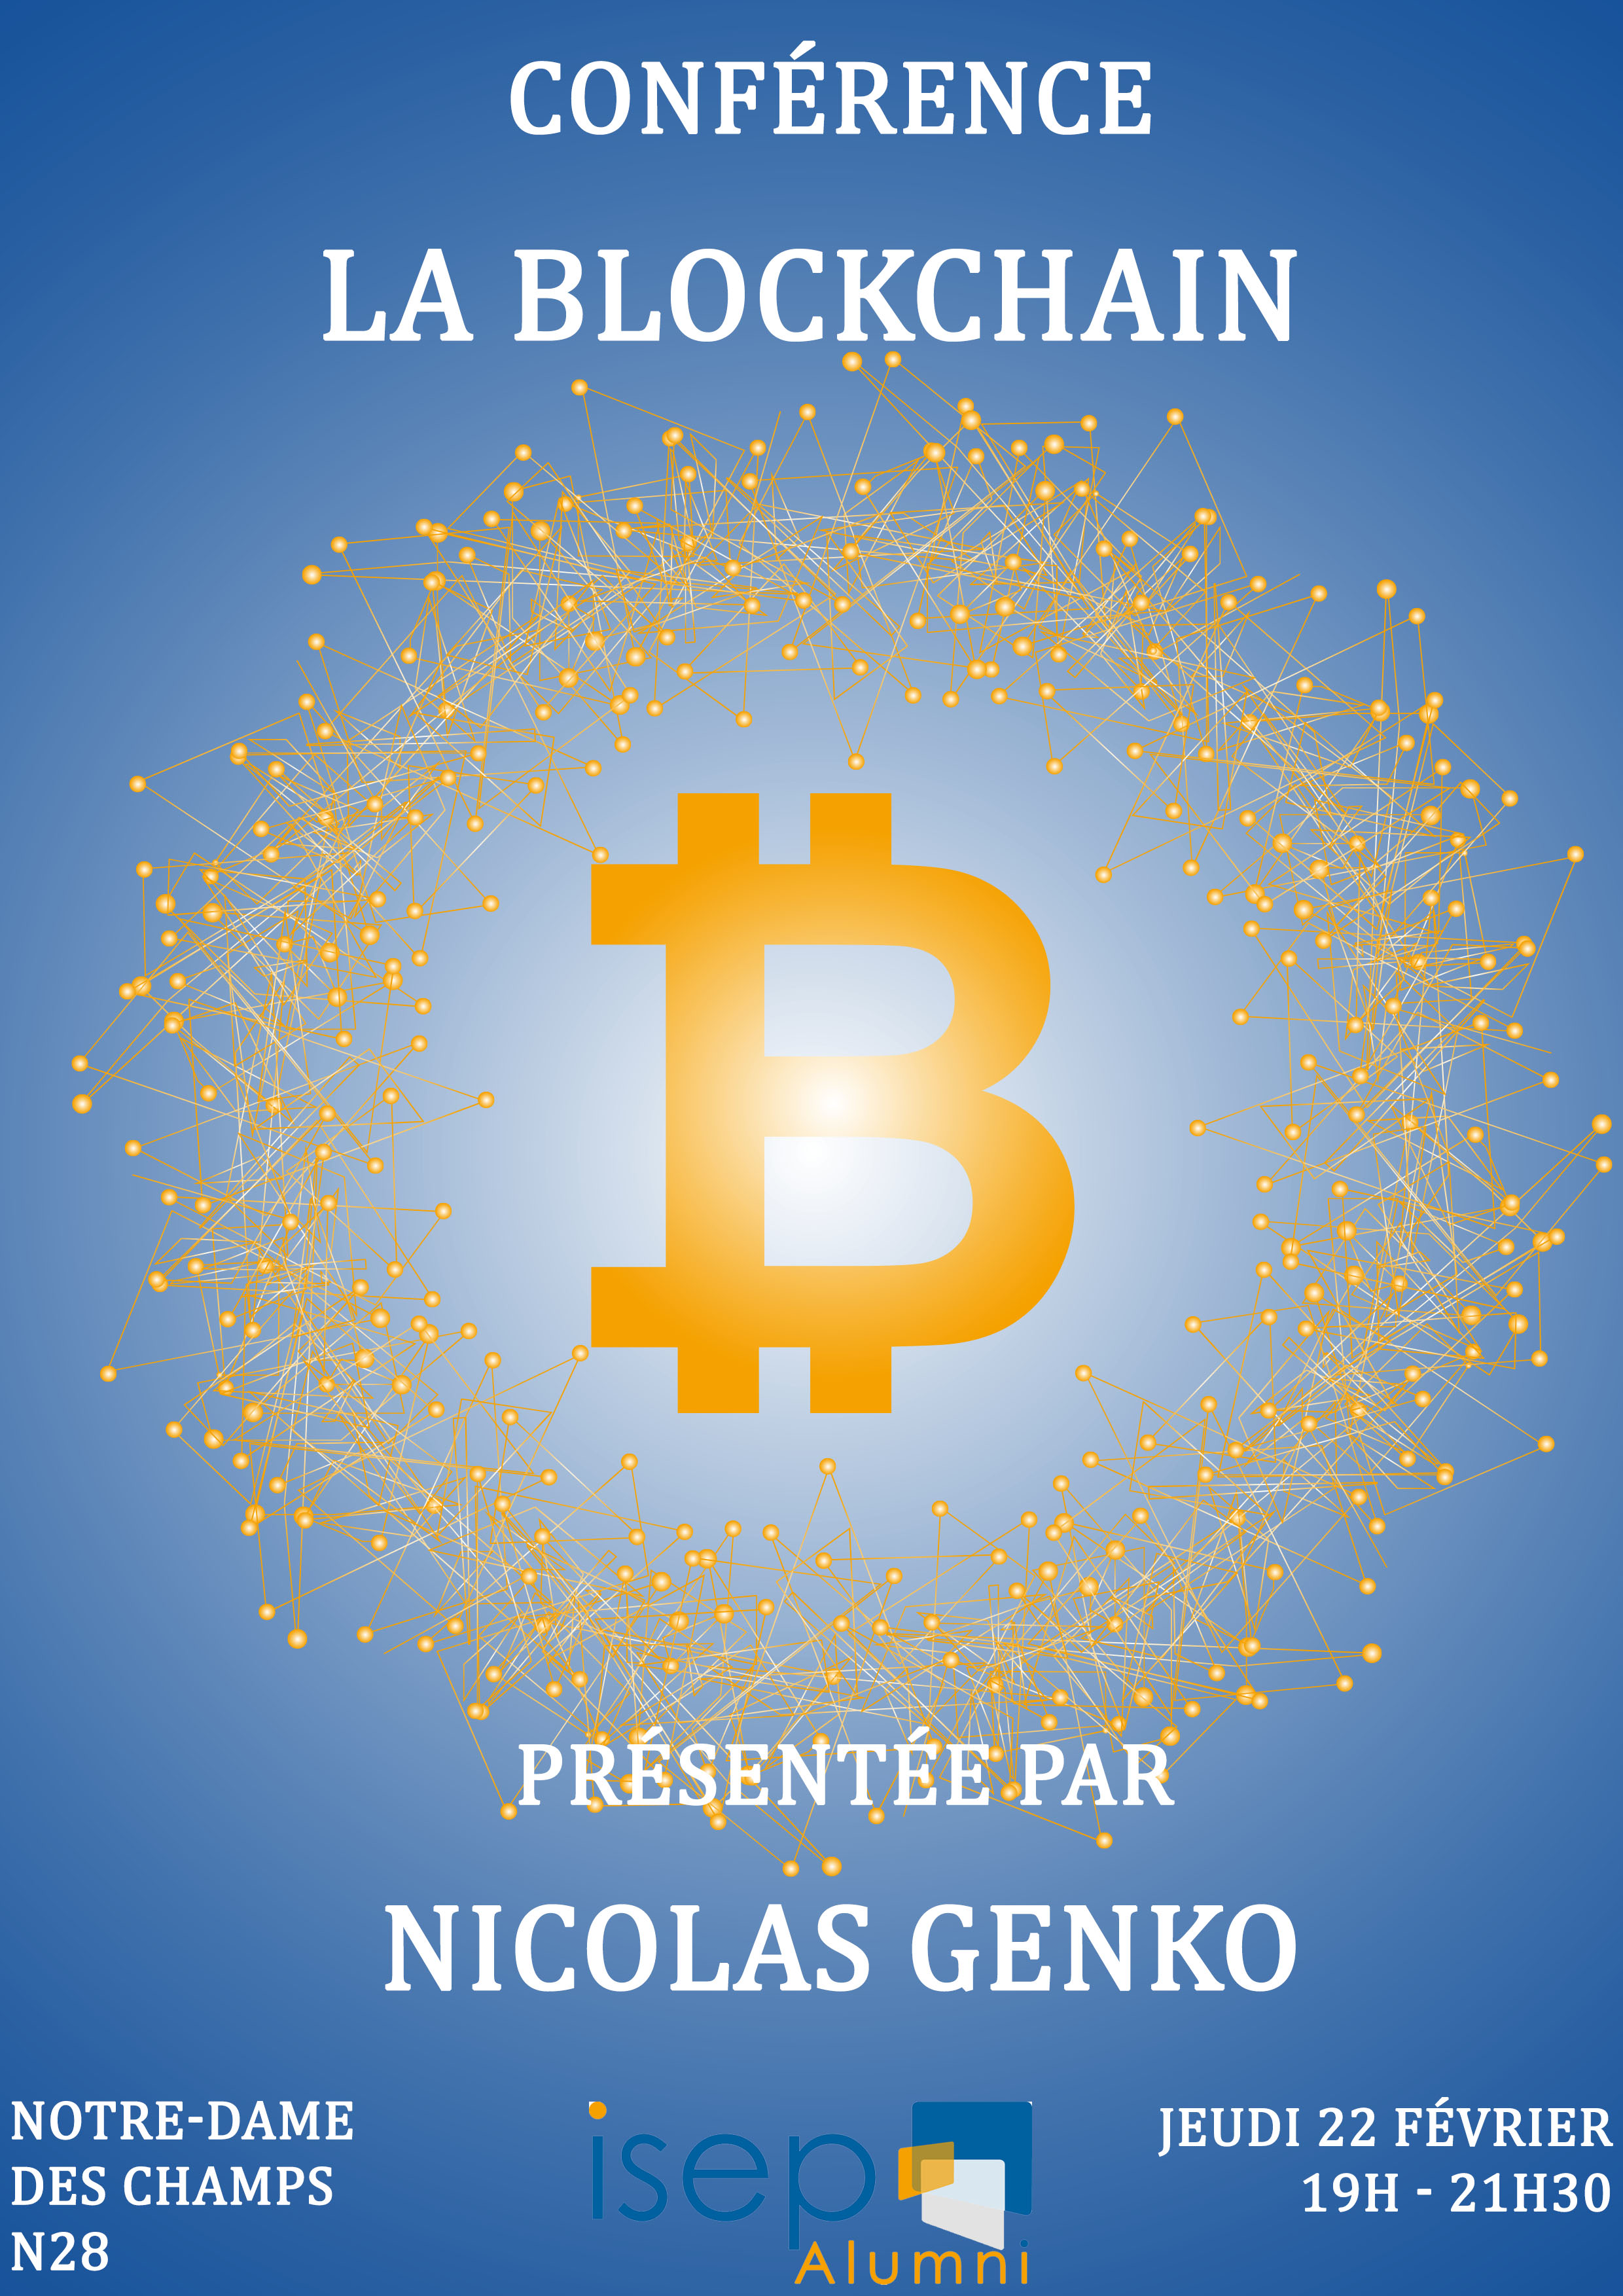 Affiche conférence "La blockchain" février 2018